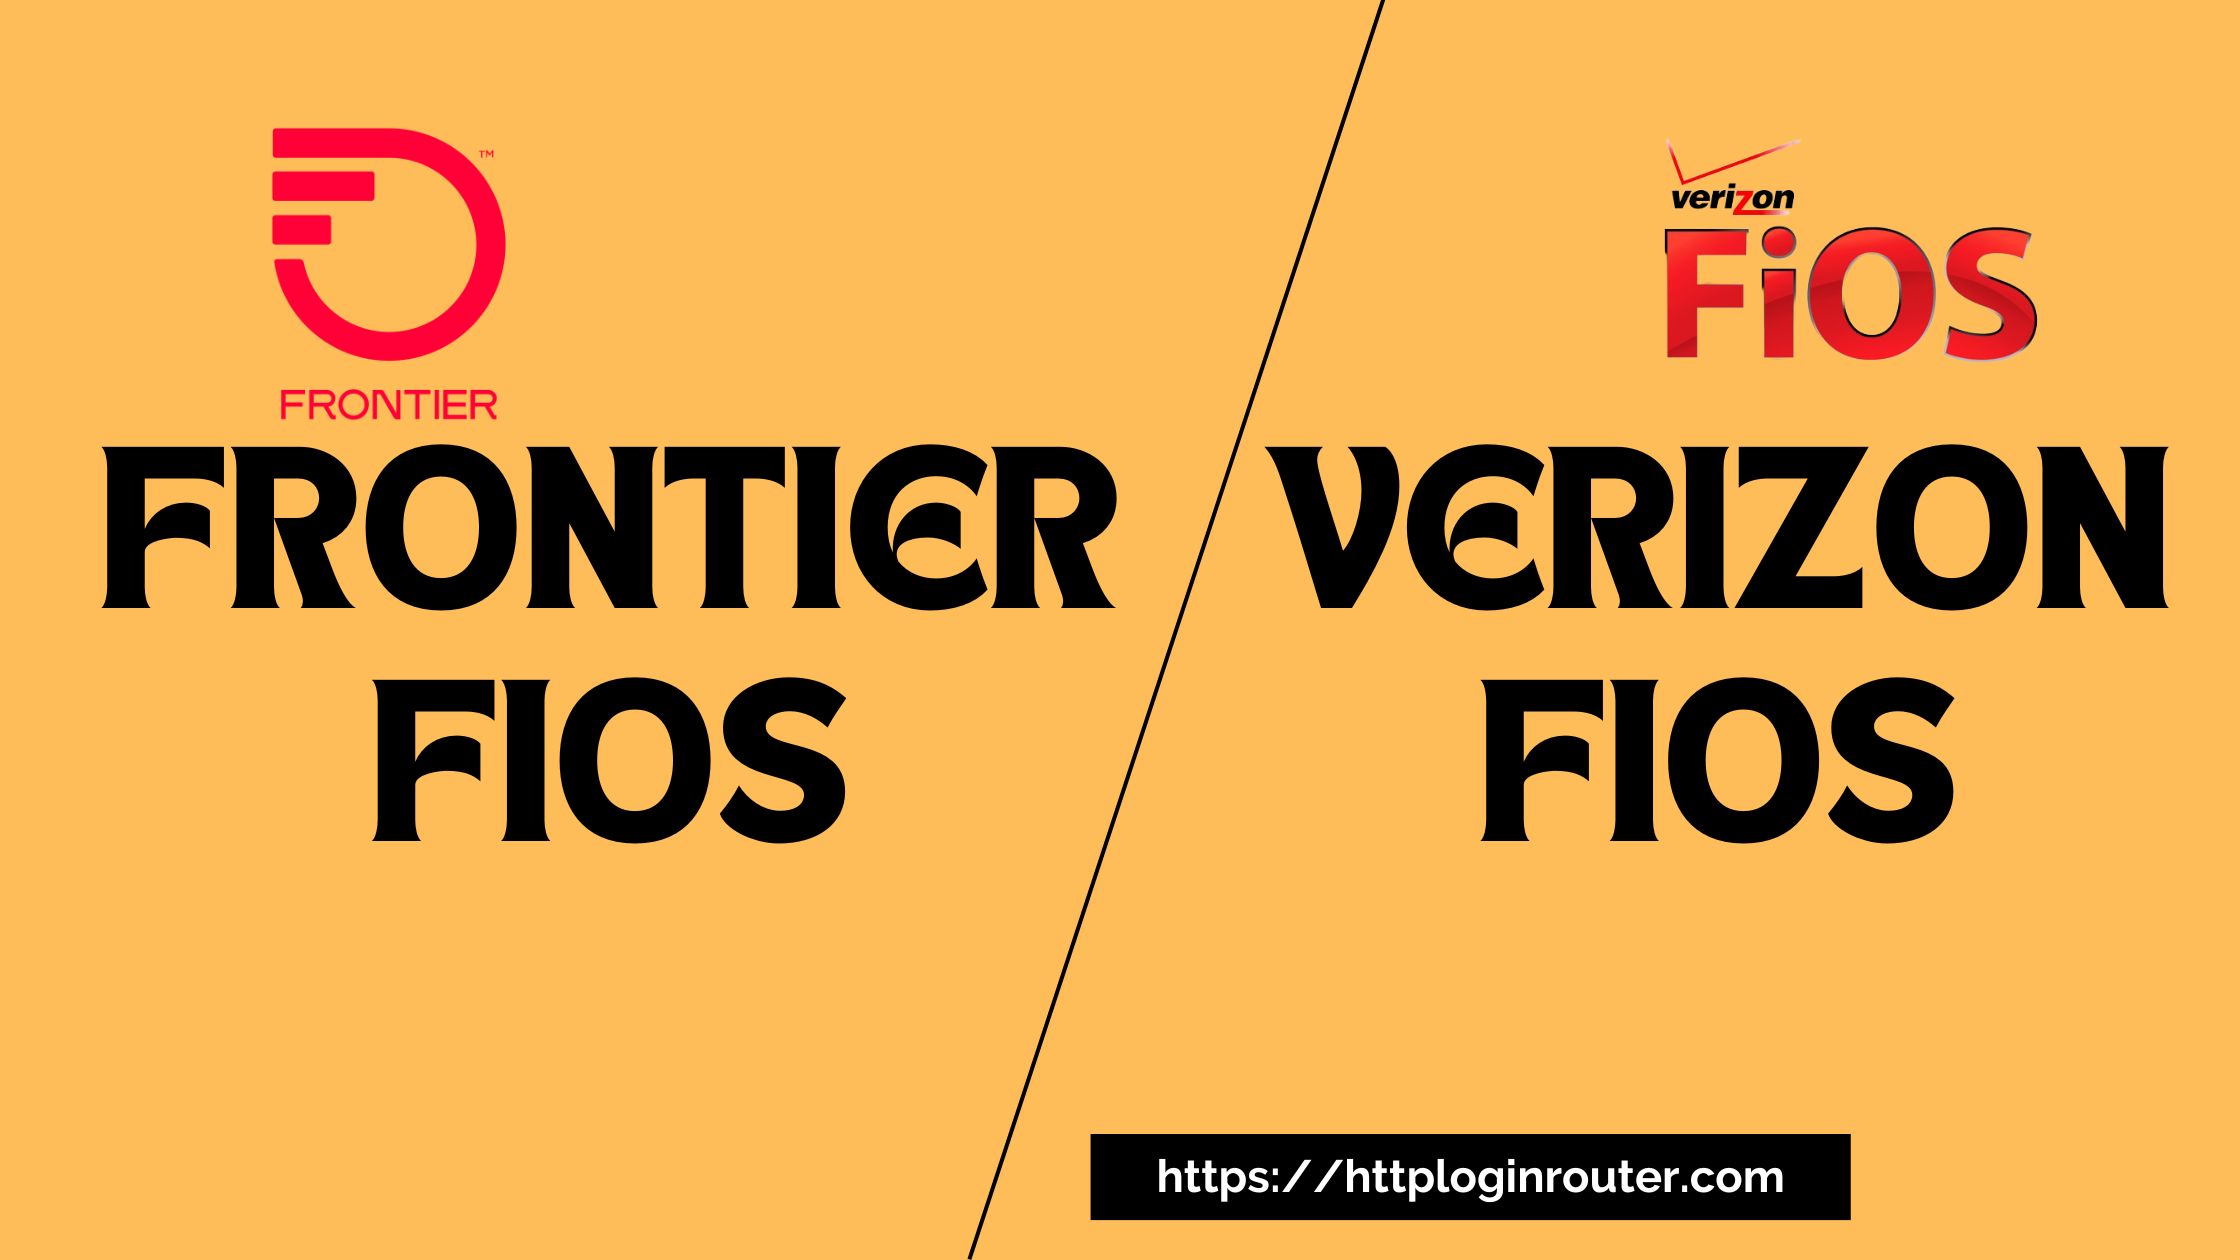 Frontier Fios vs Verizon Fios